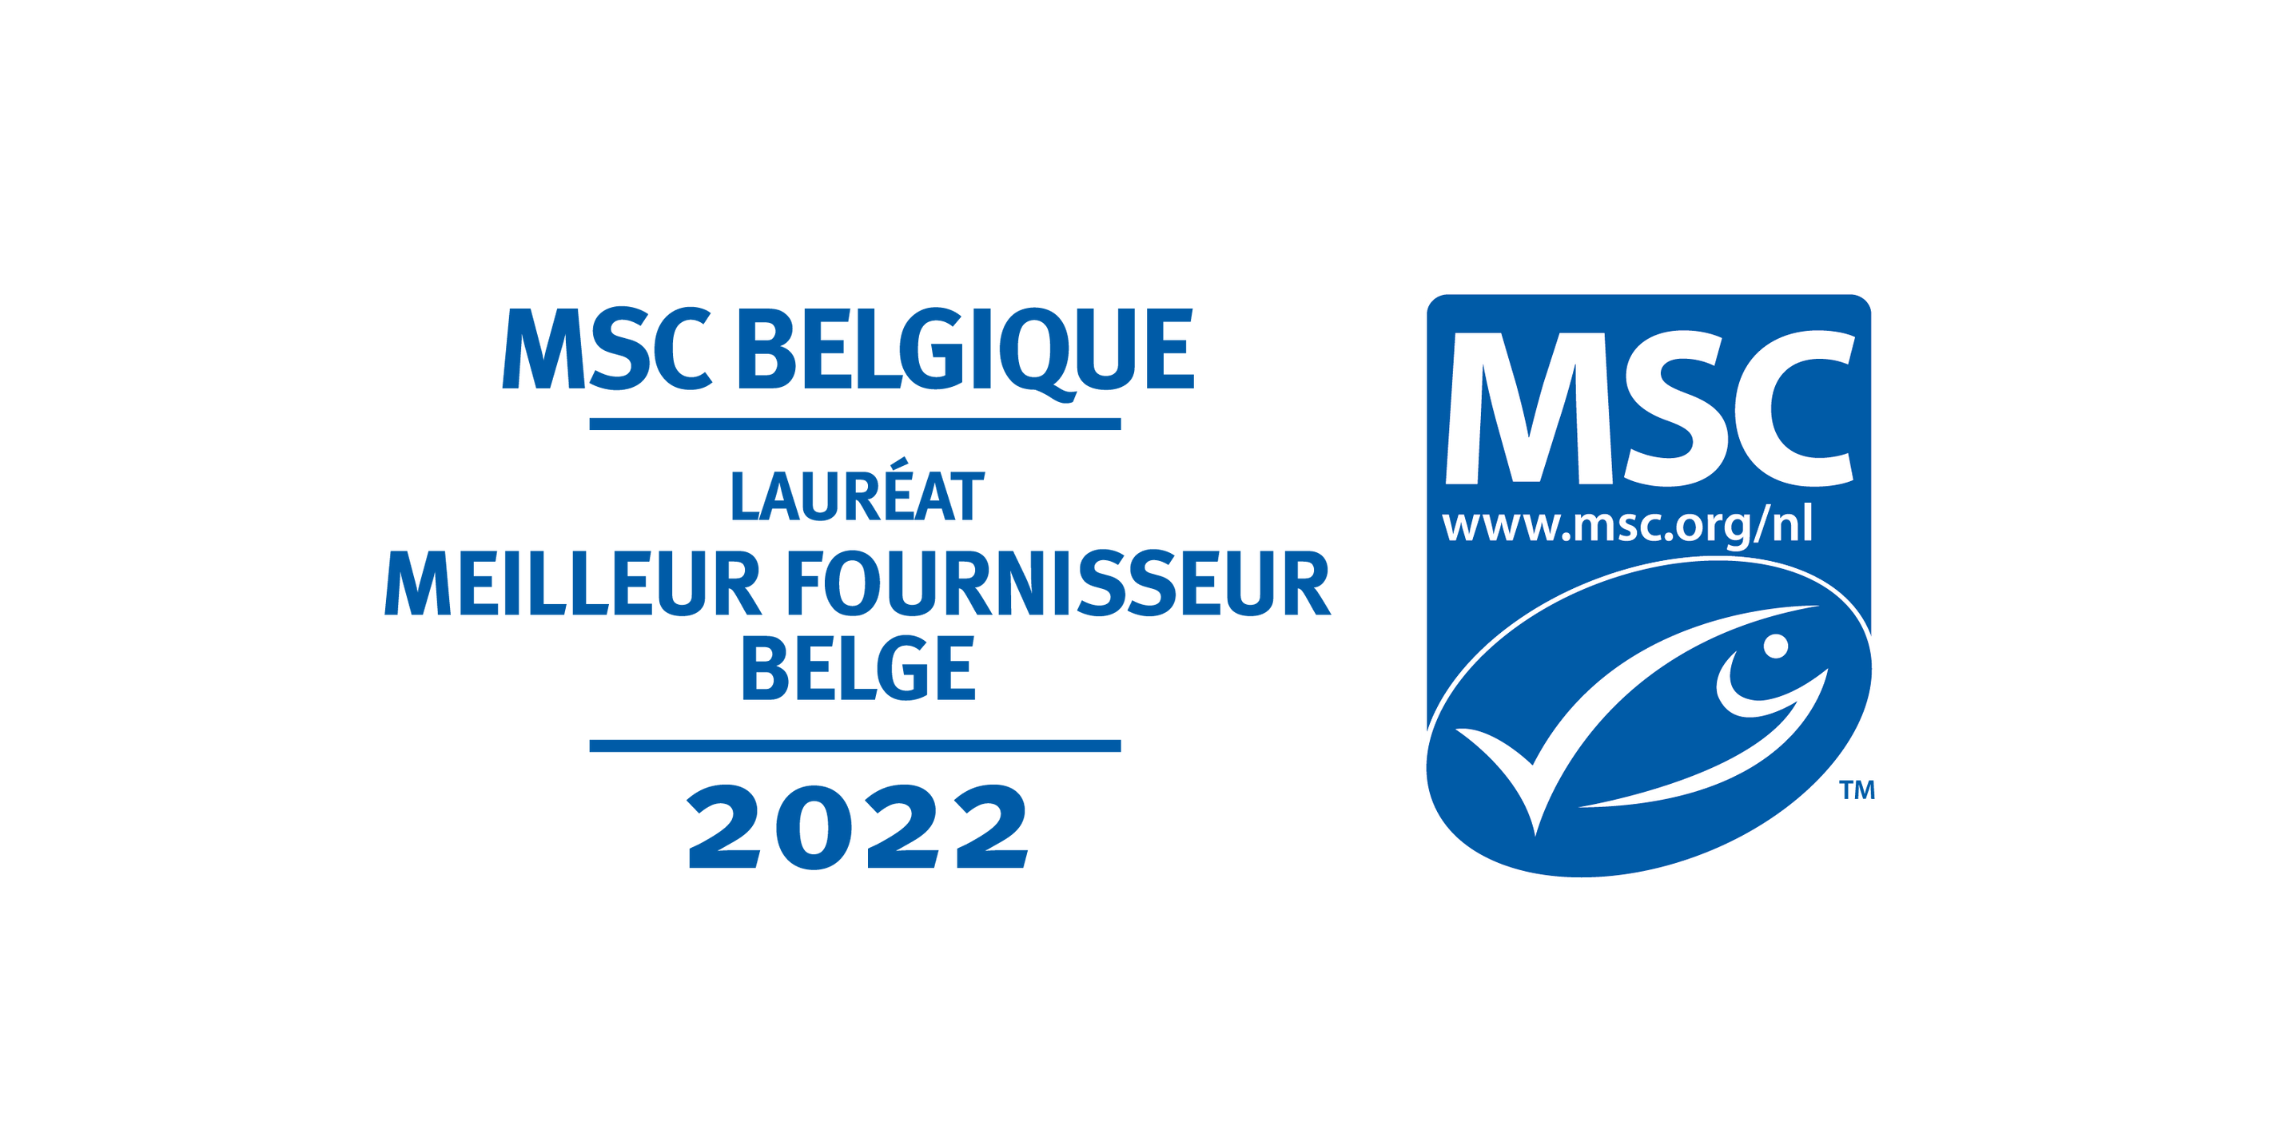 MSC Belgique